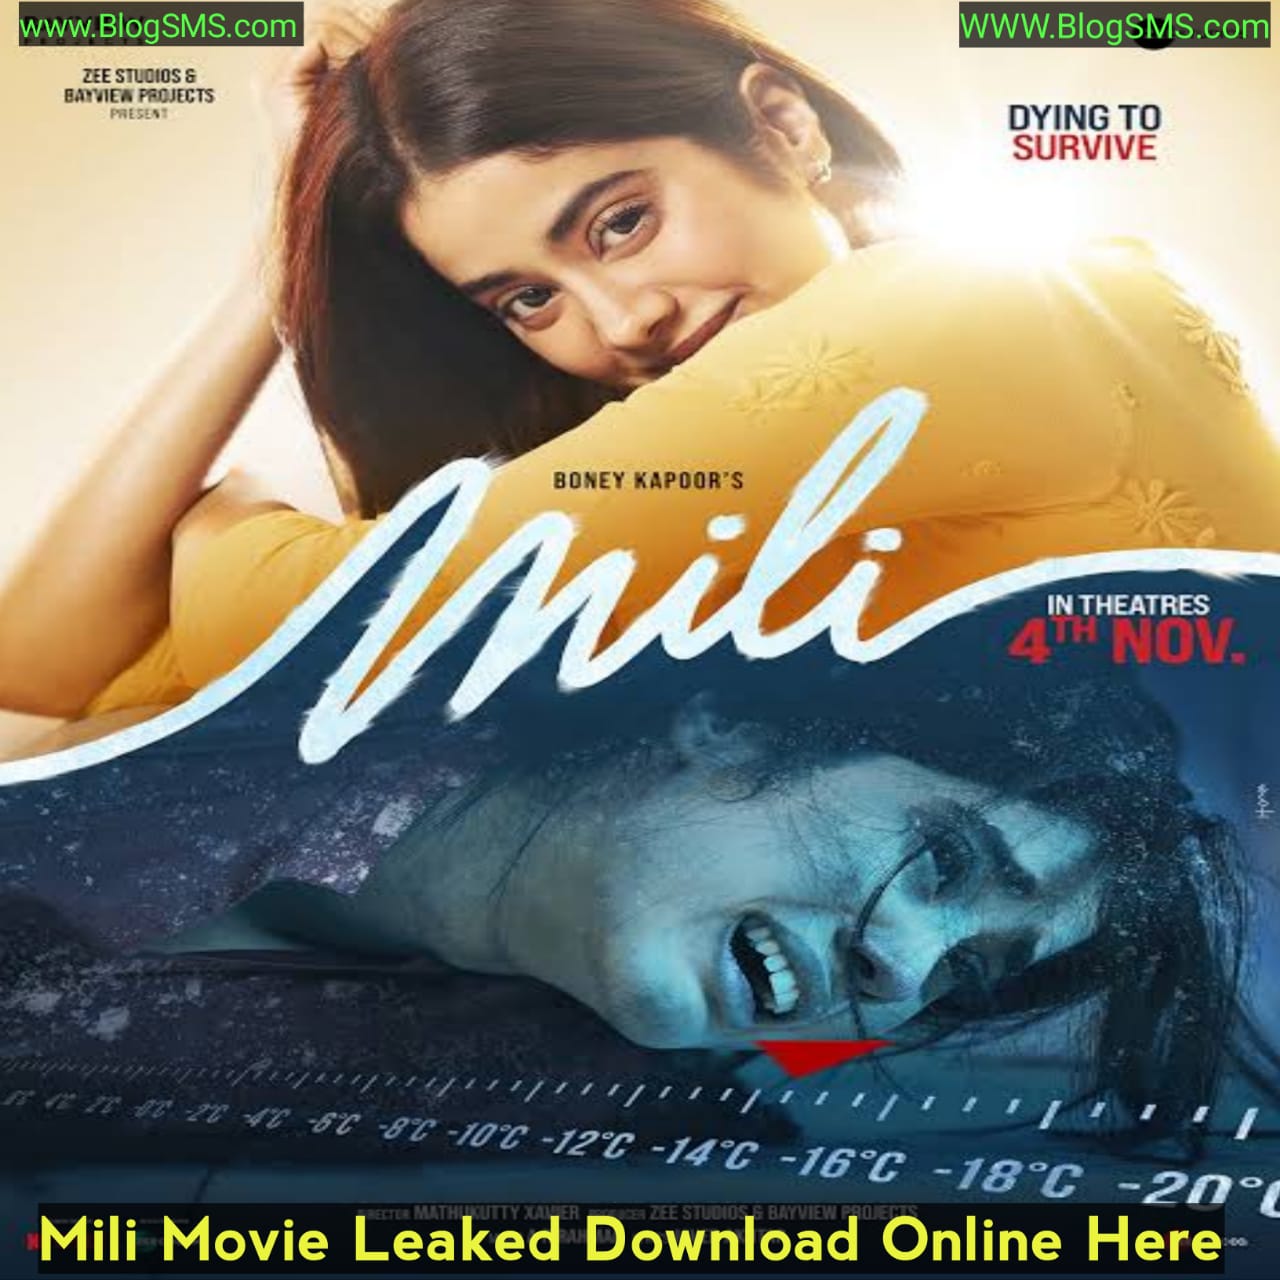 Mili Movie Download Online Leaked on Filmyzilla, Tamilrockers, Telegram Link and other Torrent Websites